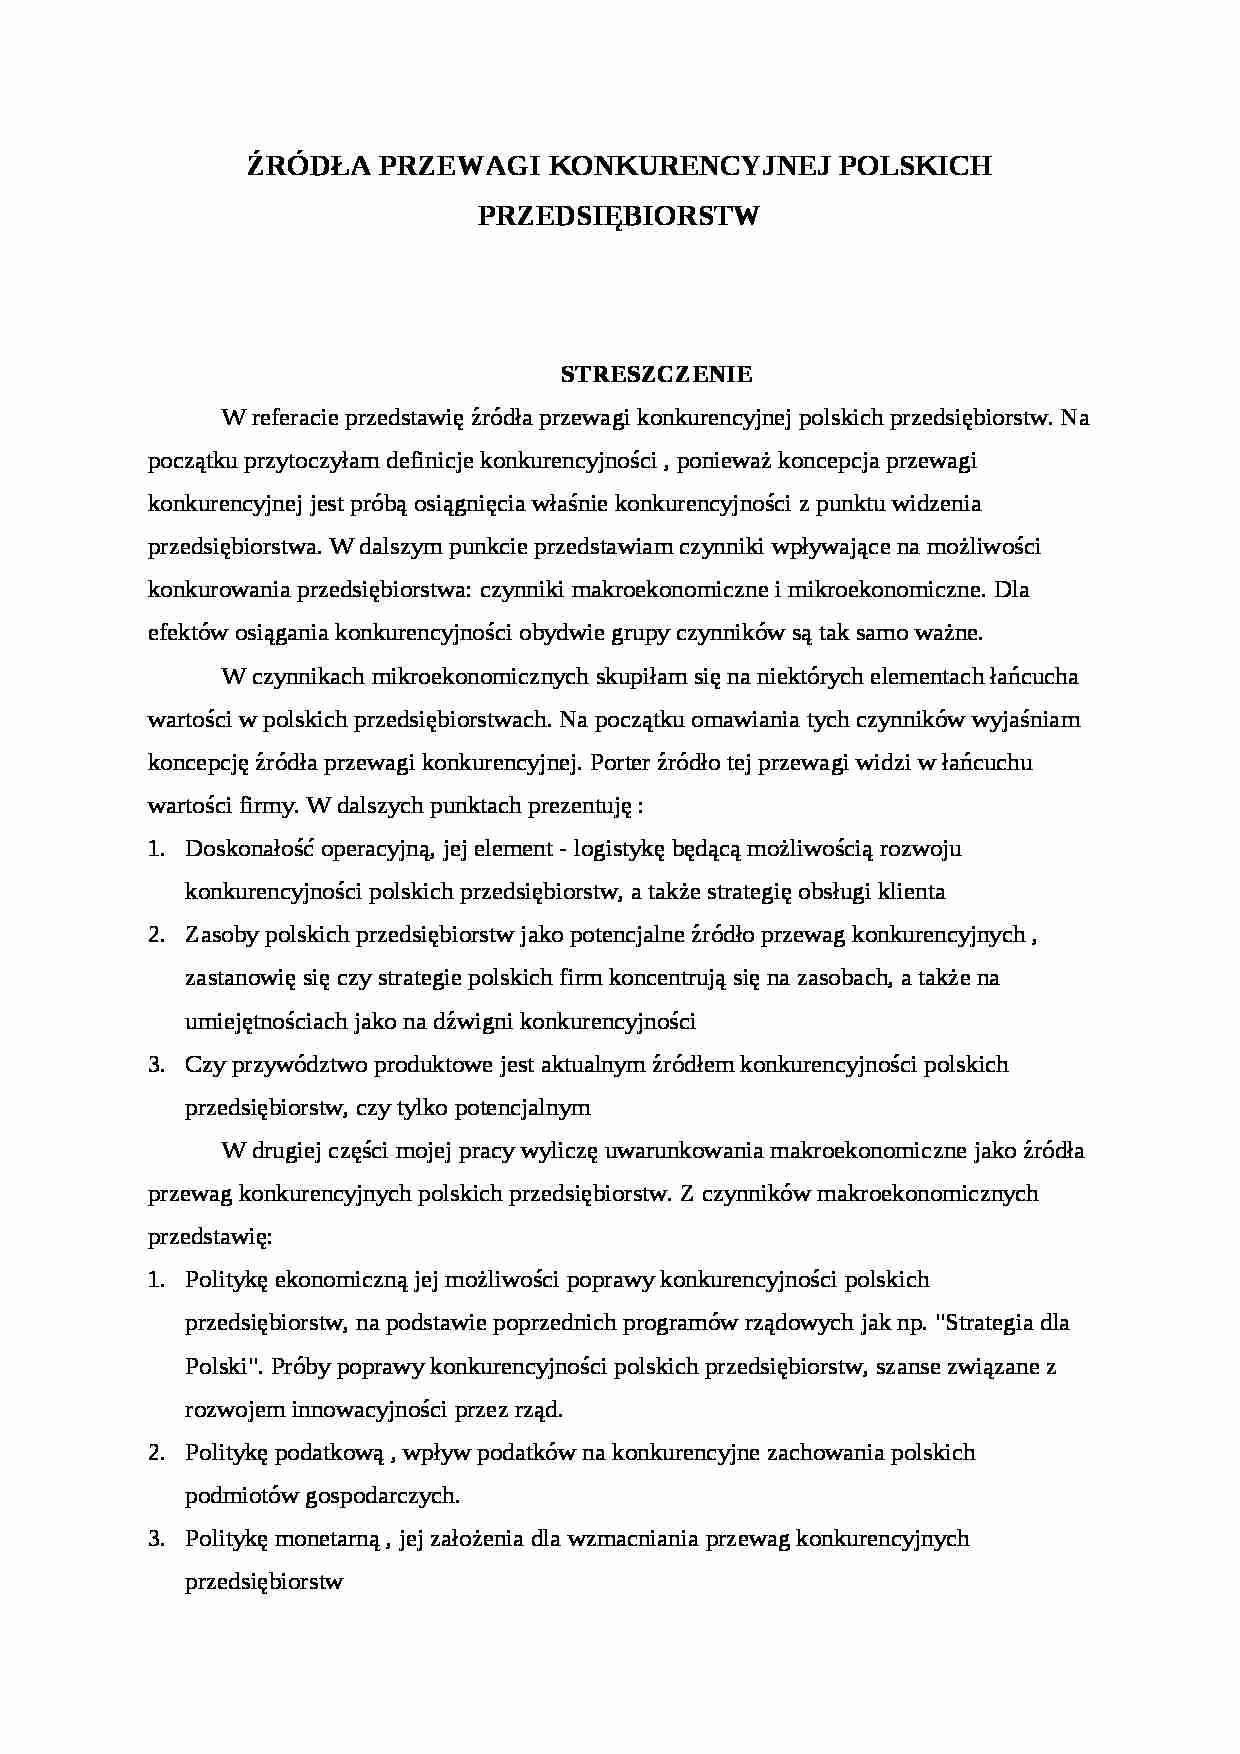 Źródła przewagi konkurencyjnej polskich przedsiębiorstw - strona 1